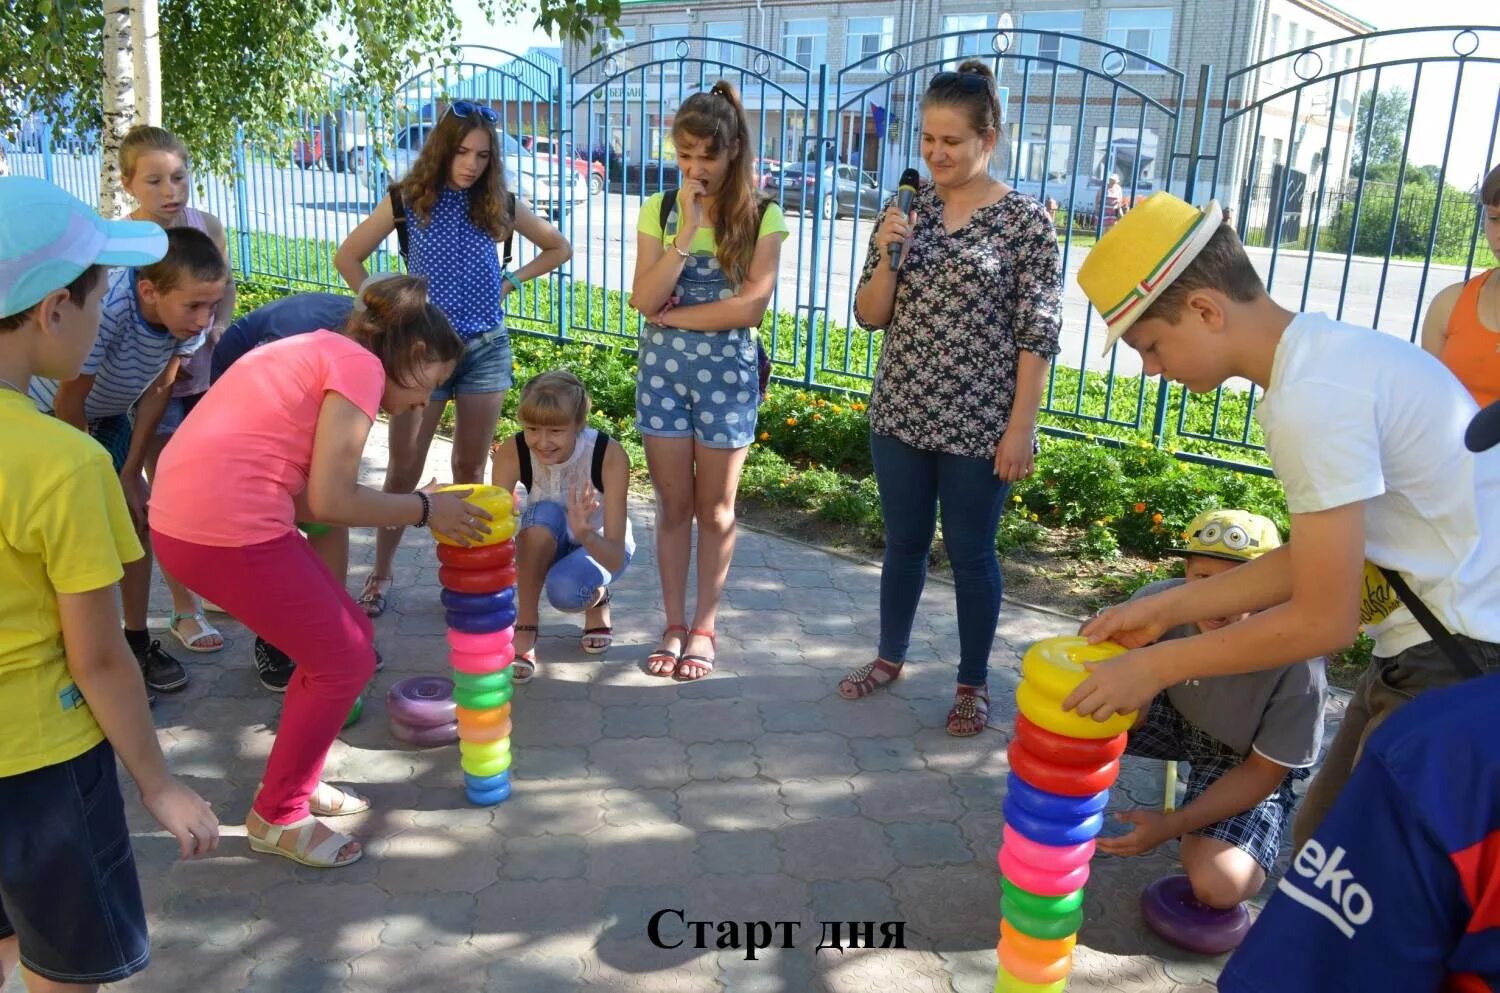 Дневной лагерь для детей в москве. Лагерь с дневным пребыванием детей. Идеи для летнего лагеря. Детский лагерь дневного пребывания. Поделки в лагере на улице.